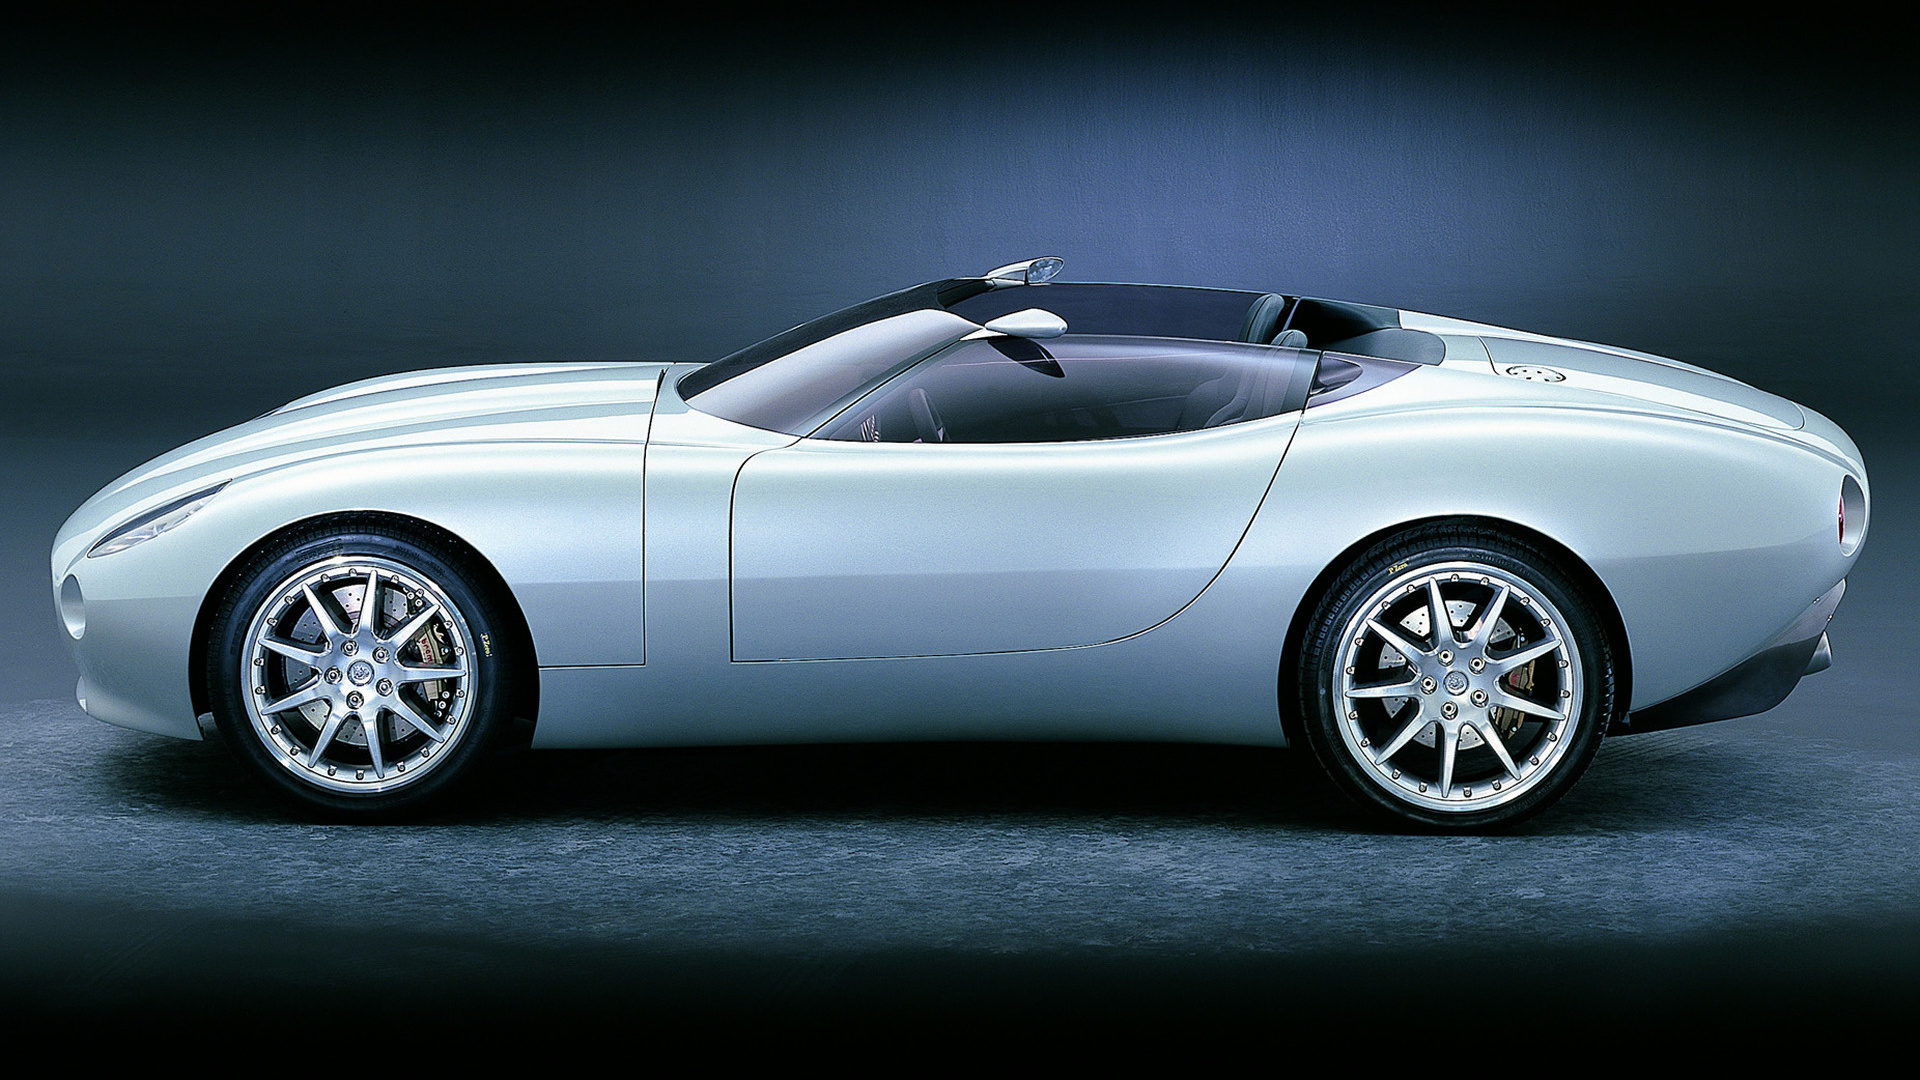 Télécharger des fonds d'écran Concept Jaguar F Type HD